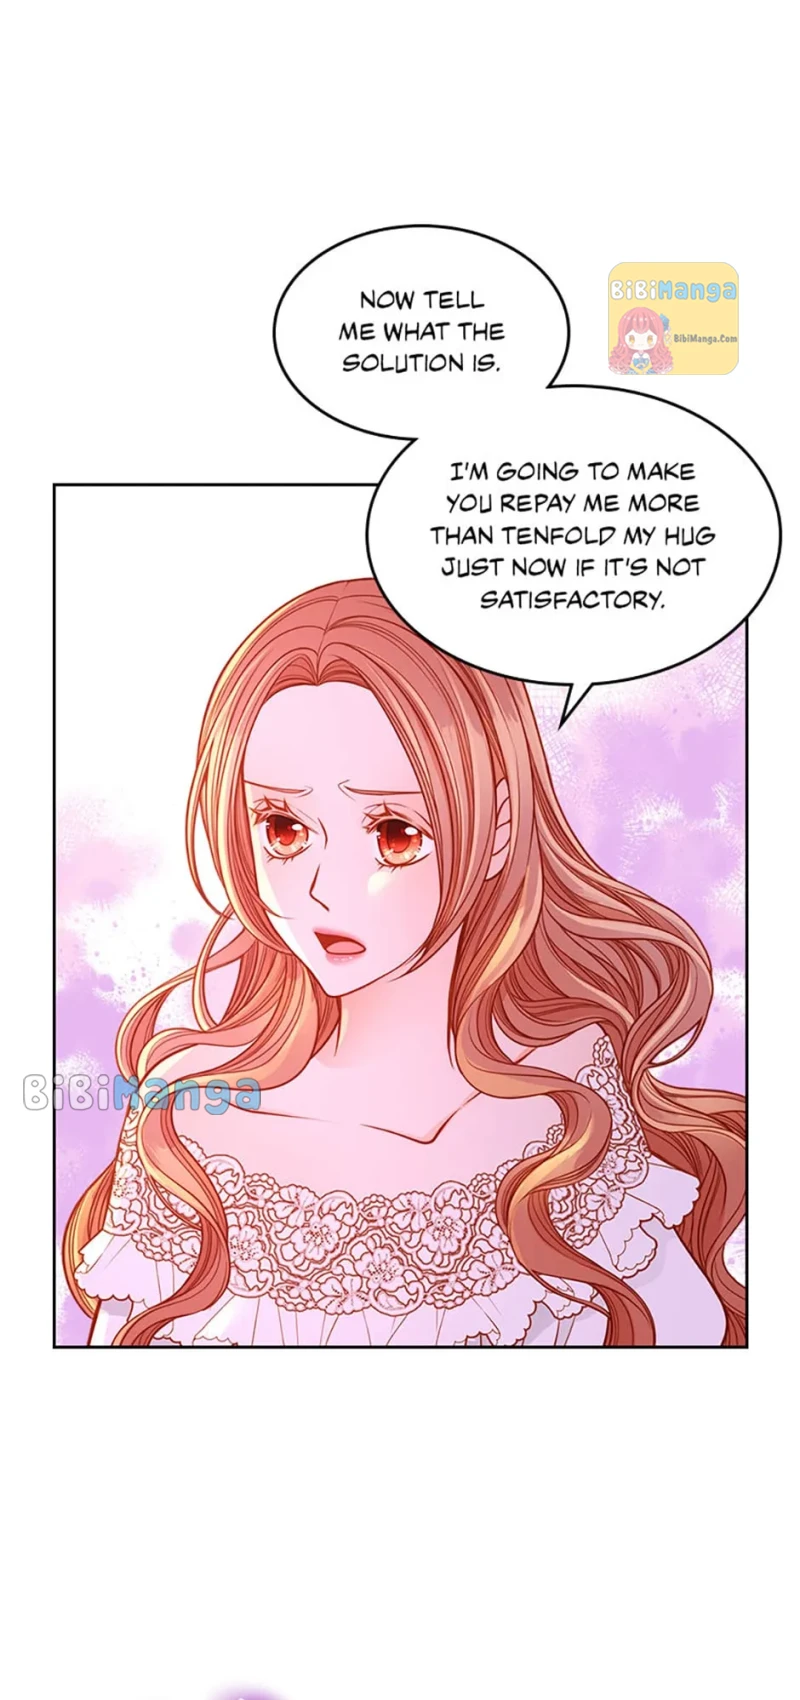 The Duchess’s Secret Dressing Room chapter 36